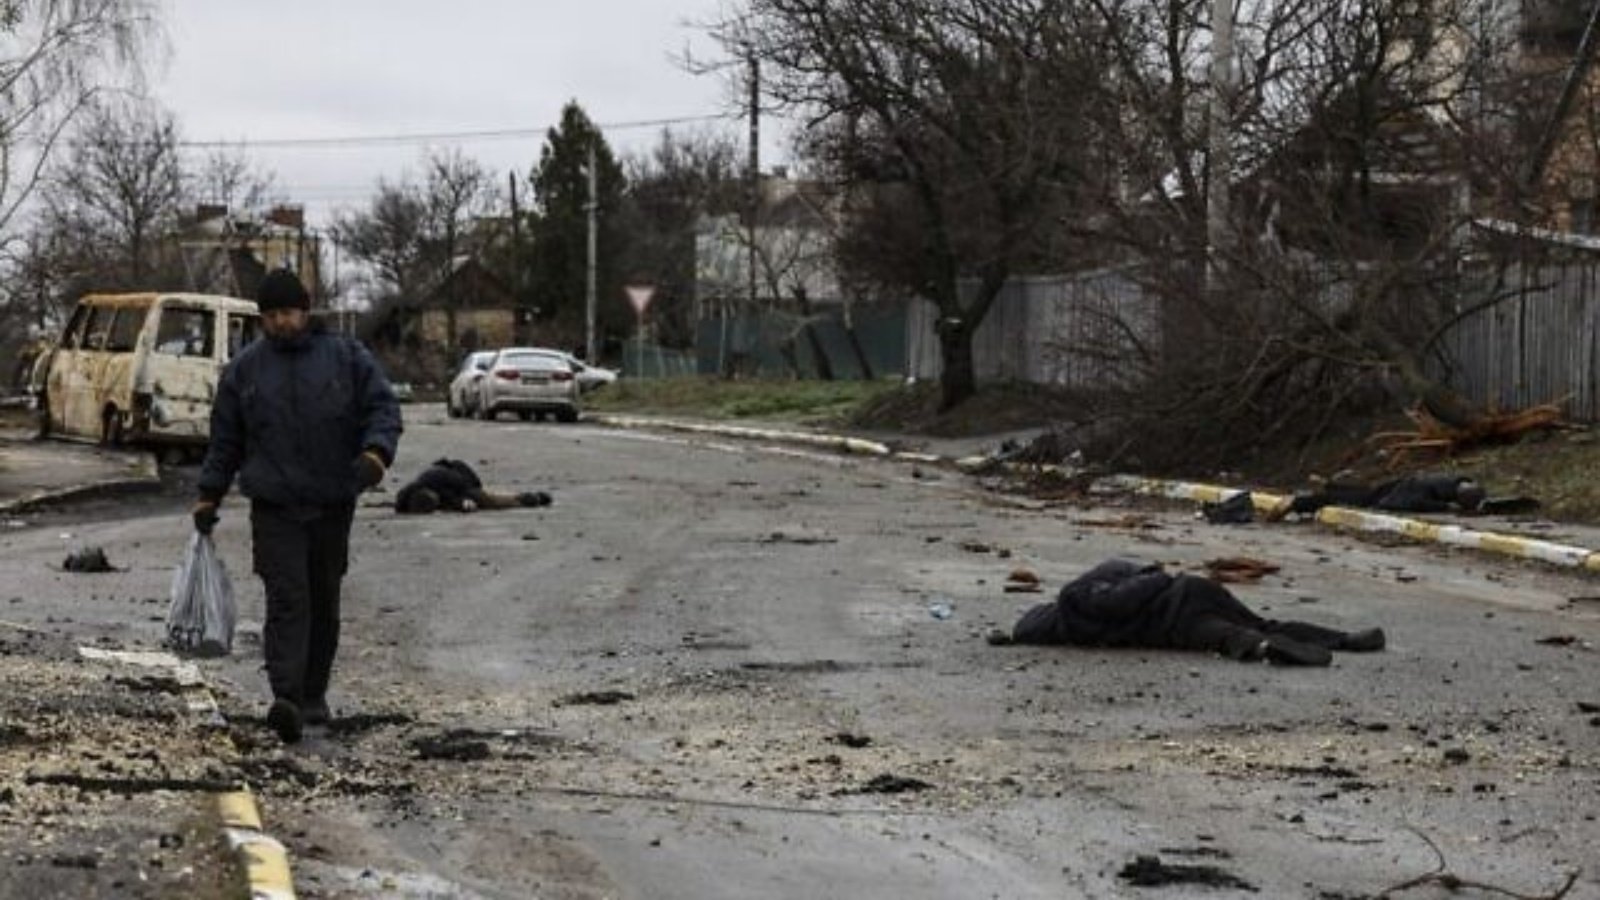 رجل يسير في أحد الشوارع مع العديد من الجثث على الأرض في بوتشا، شمال غرب كييف، أوكرانيا، في 2 أبريل 2022